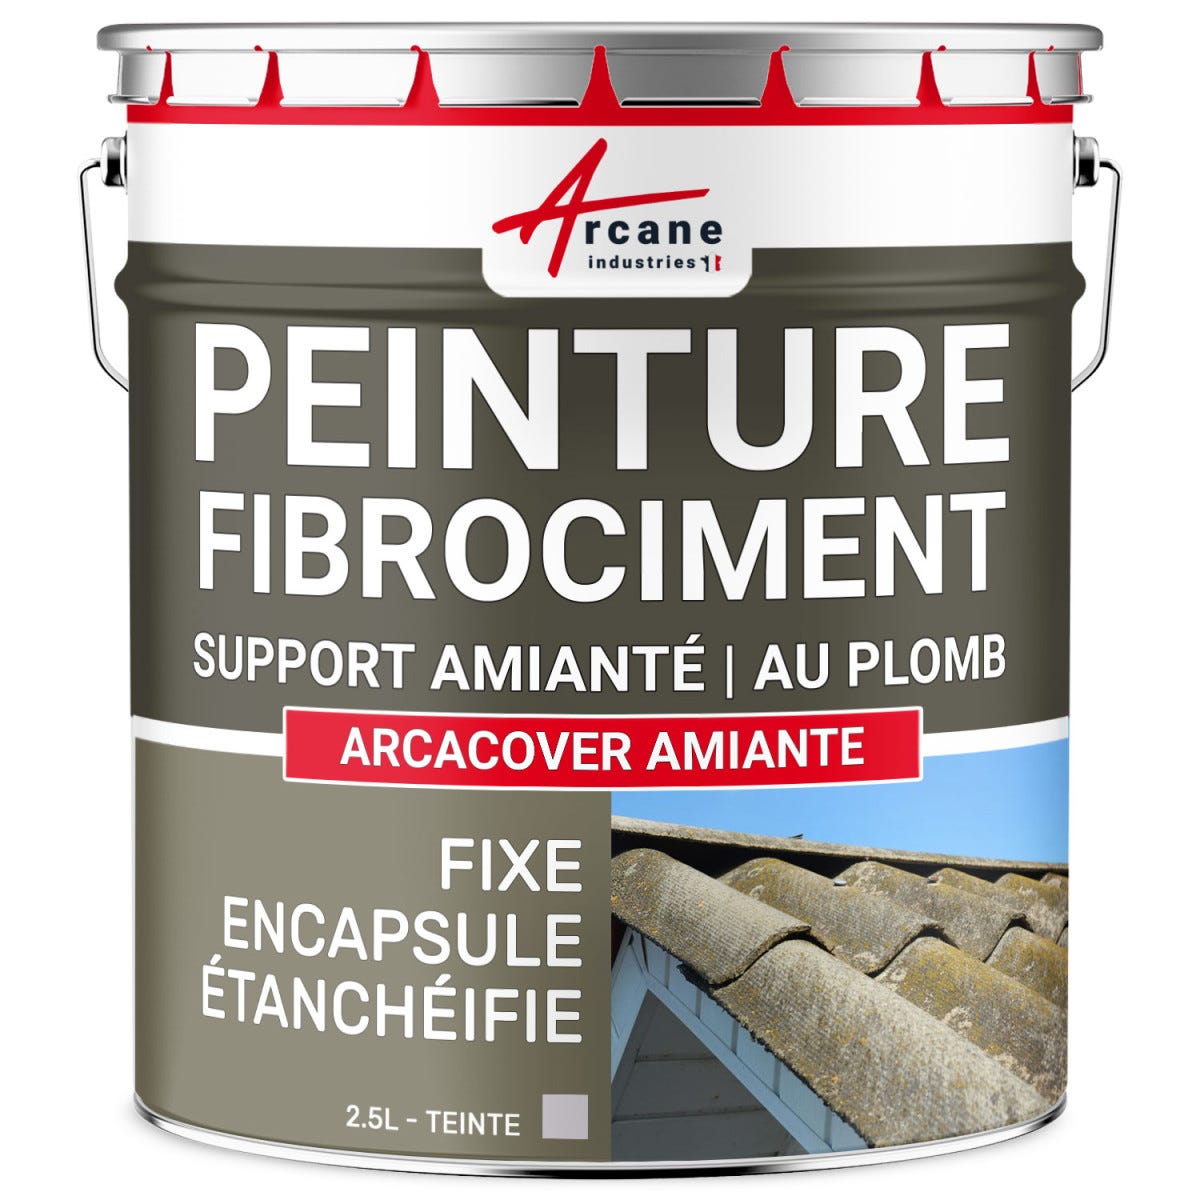 Peinture fibro ciment pour encapsulage support amiante / plomb : ARCACOVER AMIANTE. Gris - 2.5 LARCANE INDUSTRIES 0